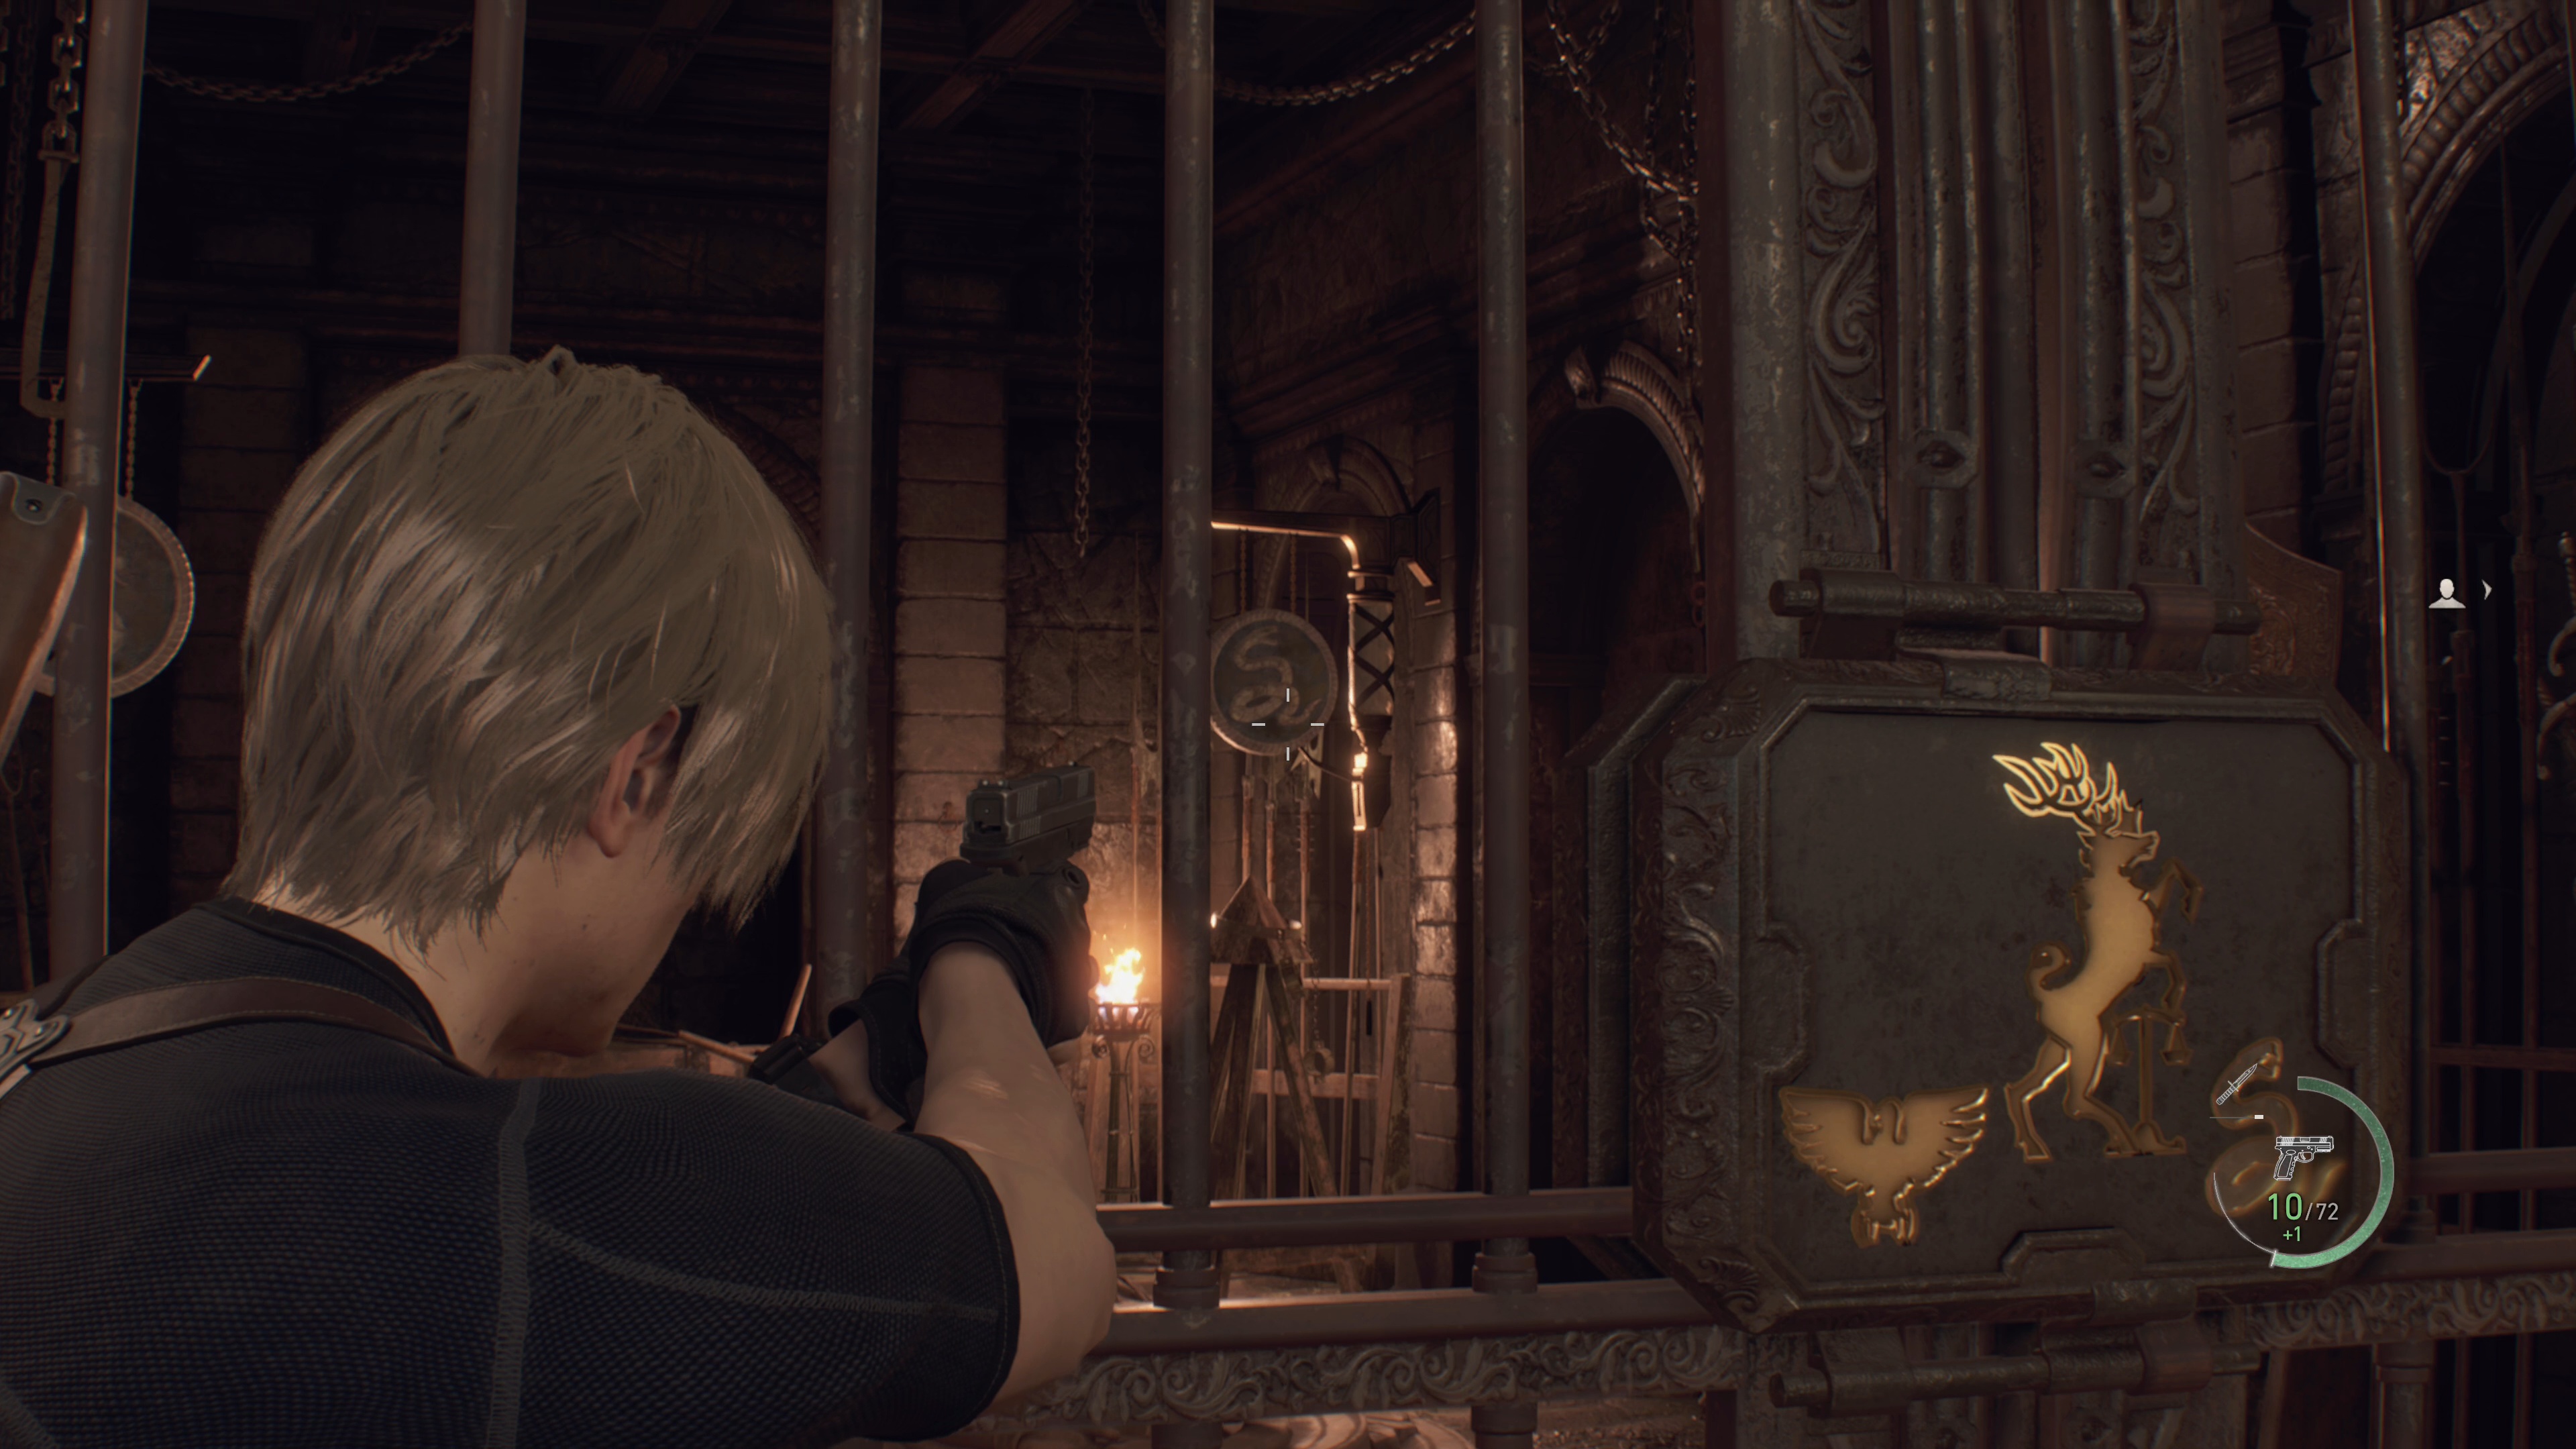 Como solucionar o puzzle das espadas no Capítulo 7 de Resident Evil 4 Remake  - PSX Brasil